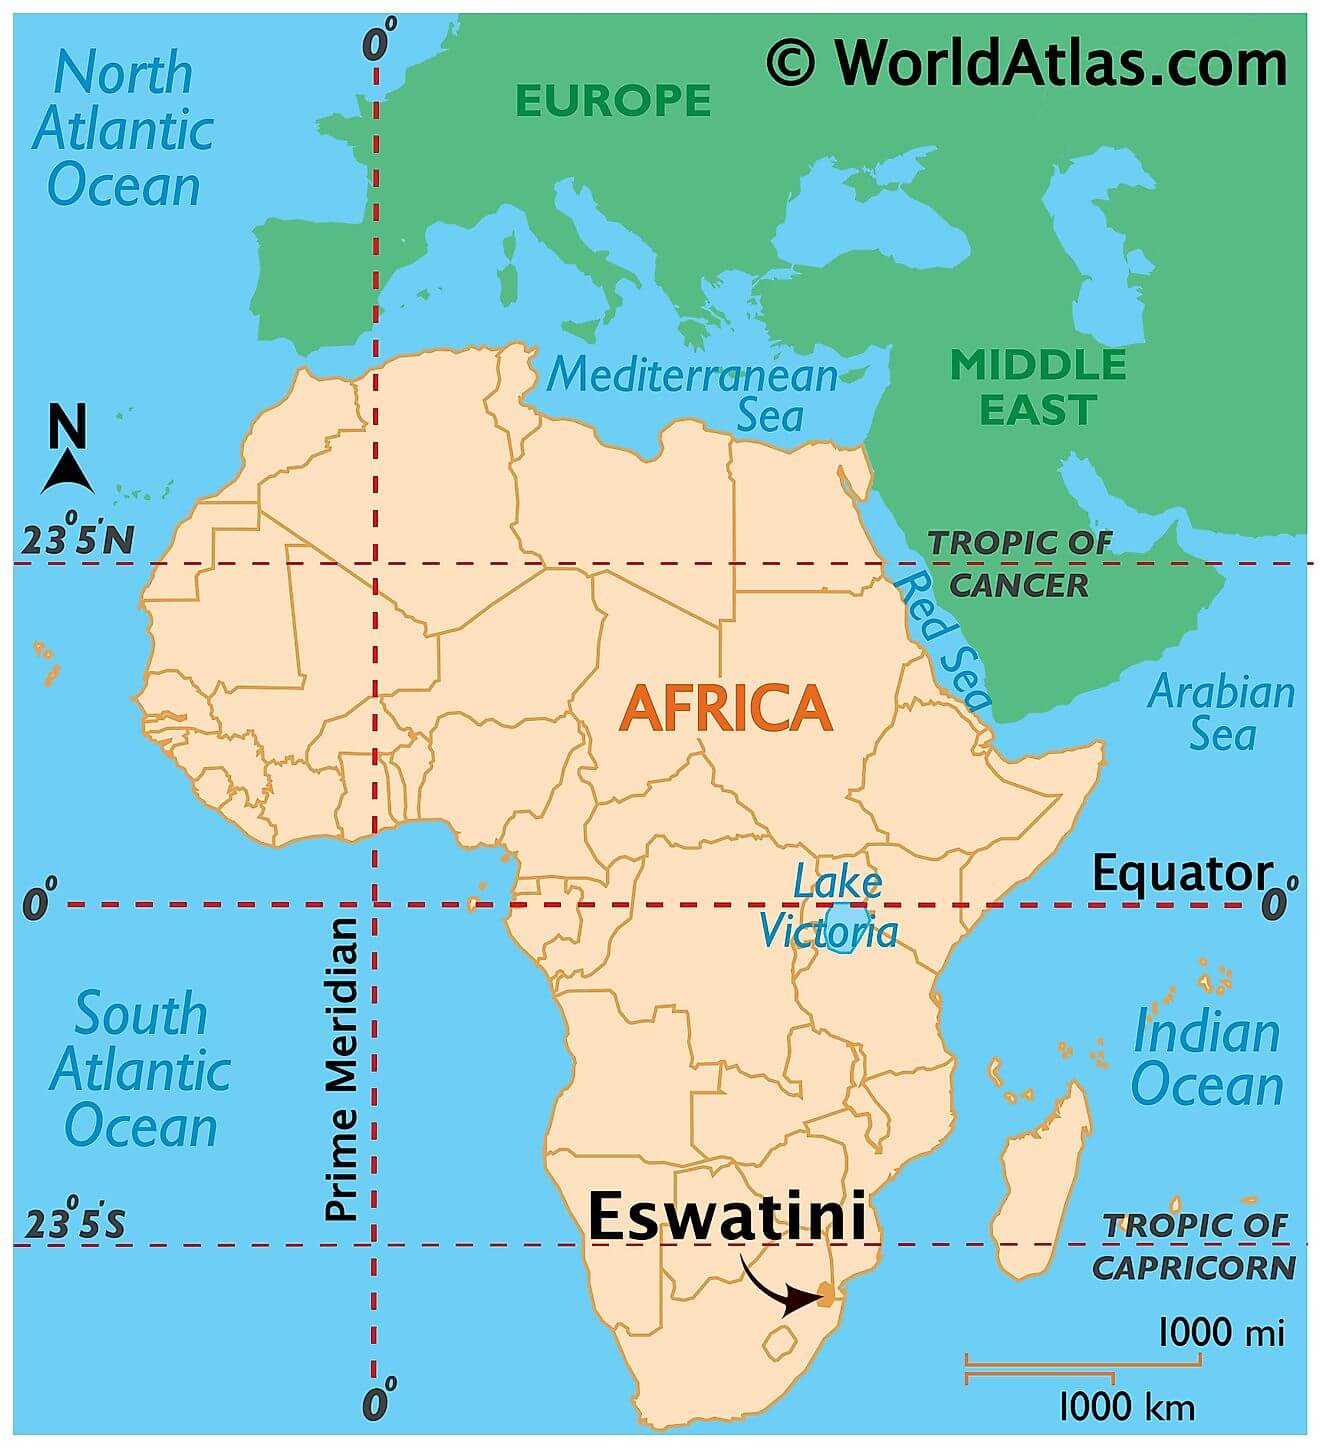 Eswatini ở đâu?